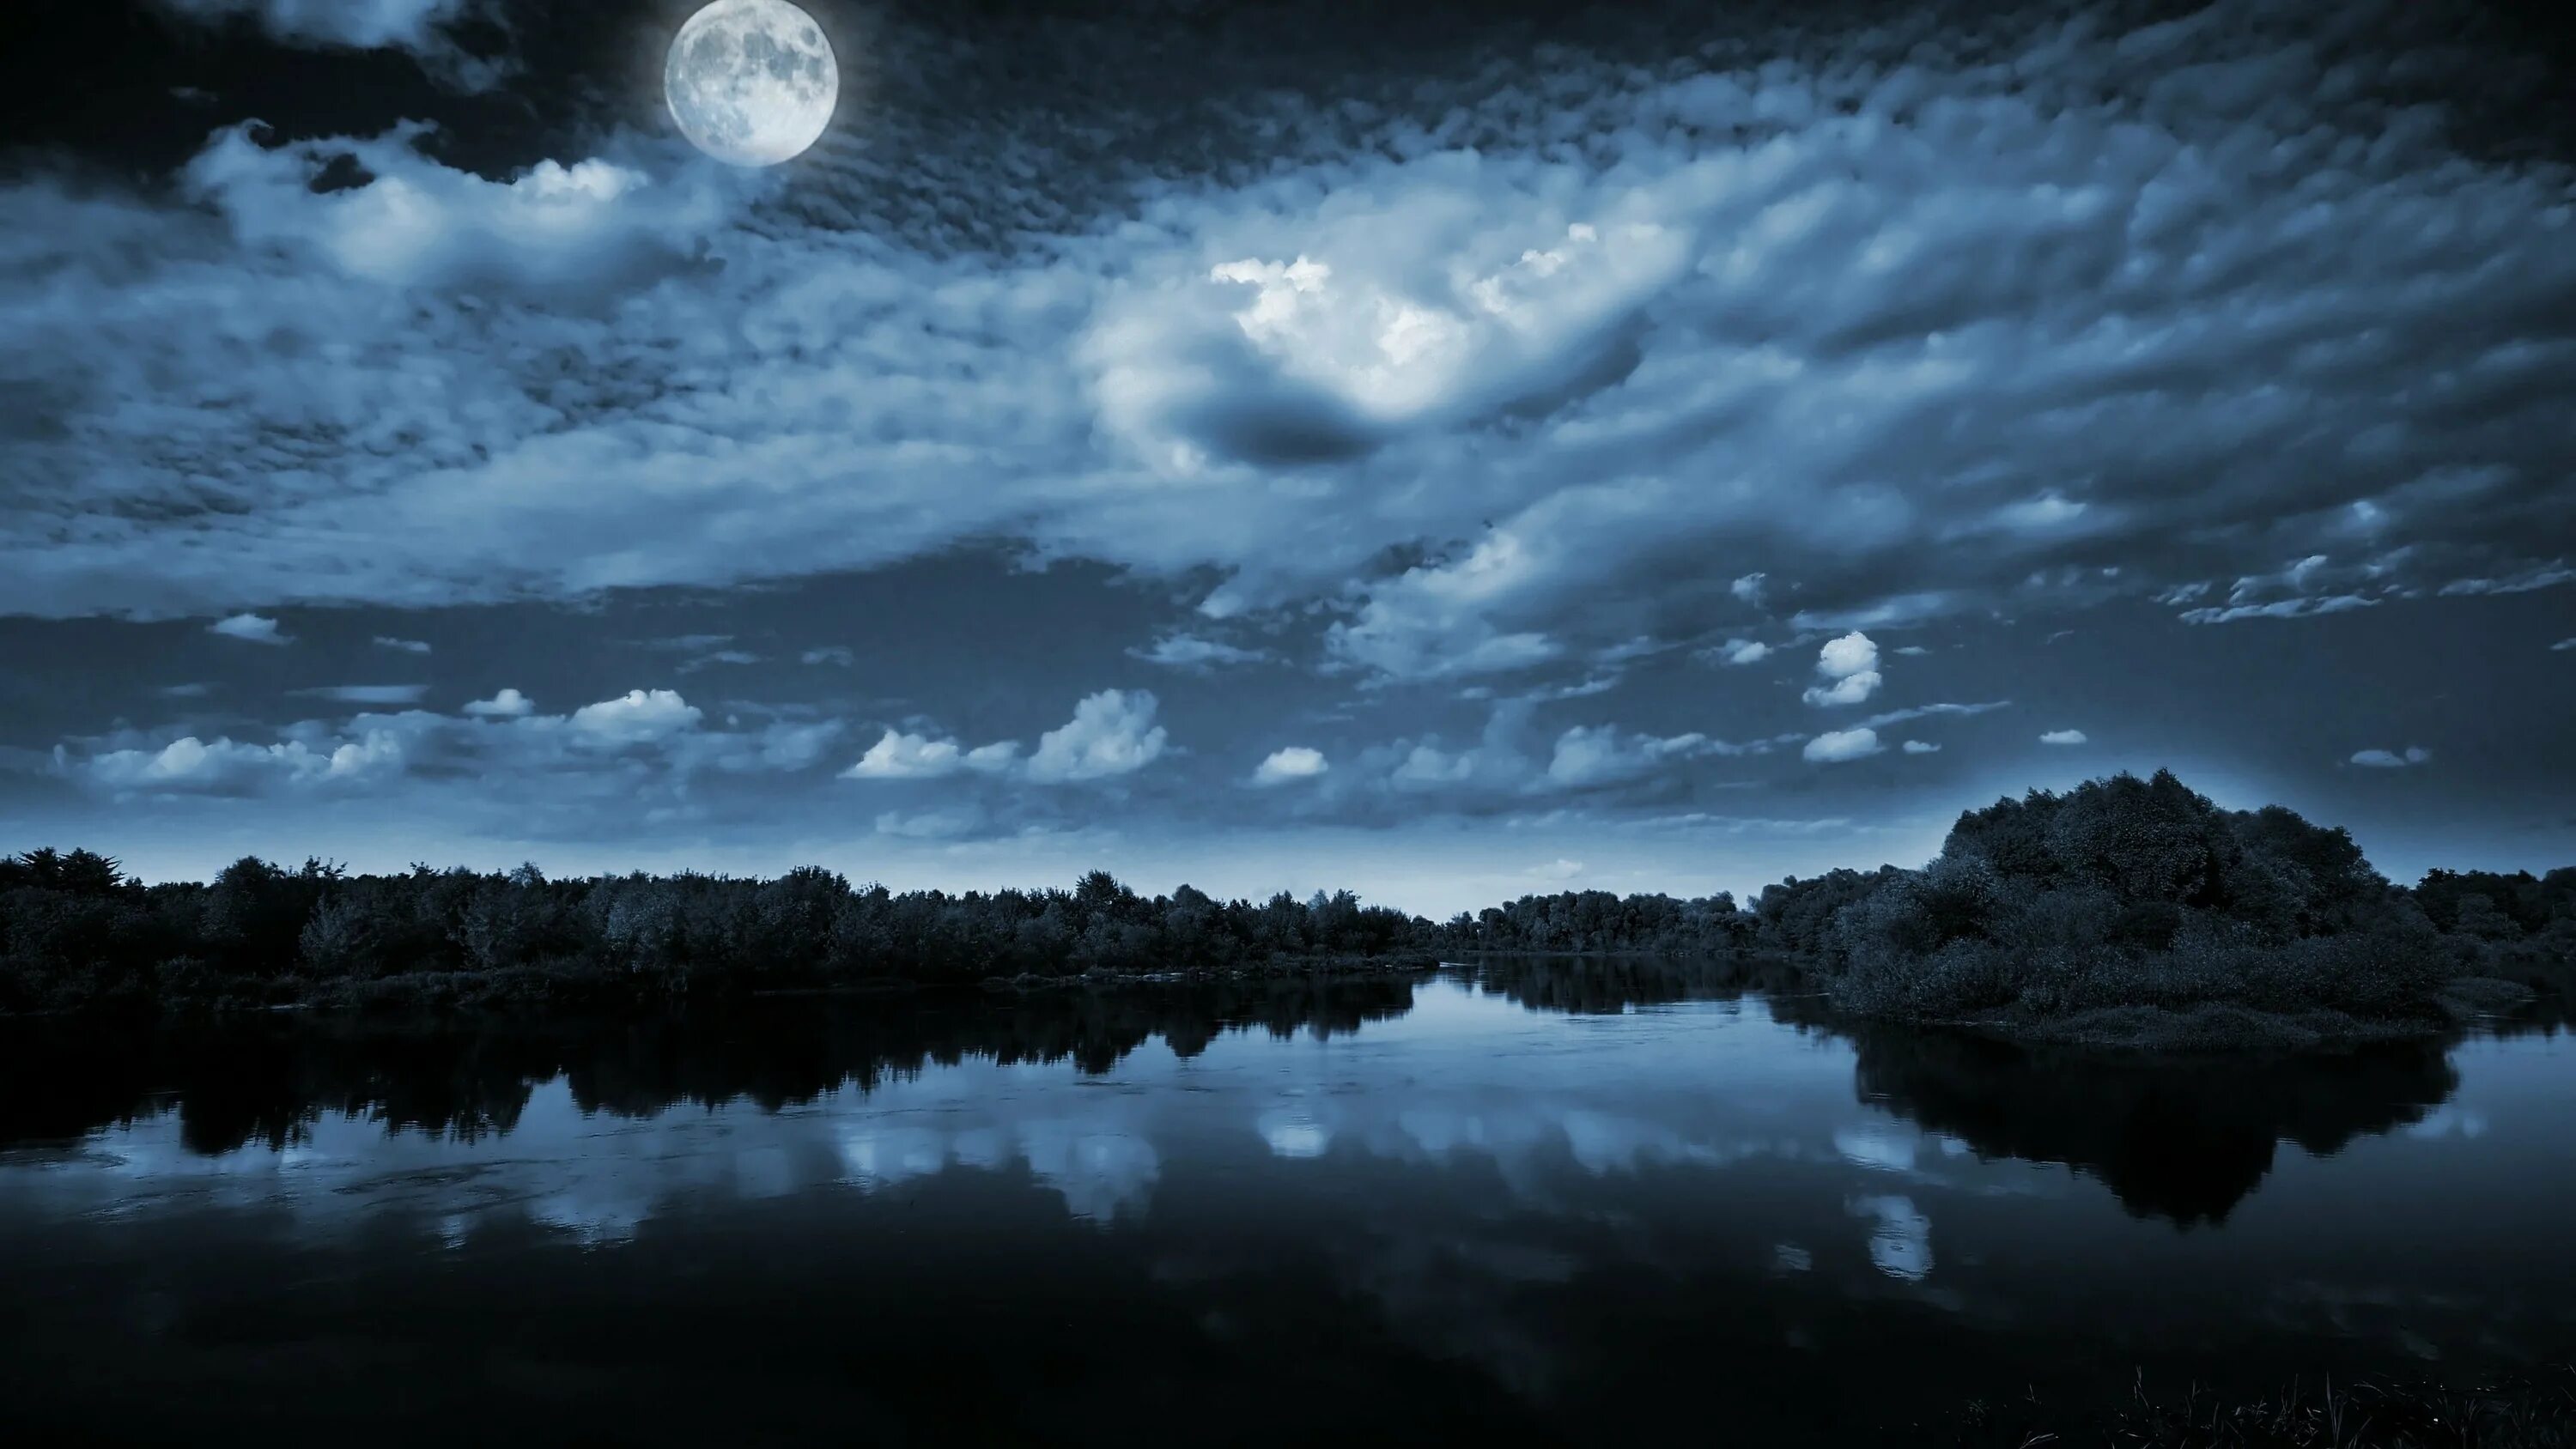 Ночной пейзаж. Лунная ночь. Озеро ночью. Озеро в лунном свете. Ночи серых дней короче